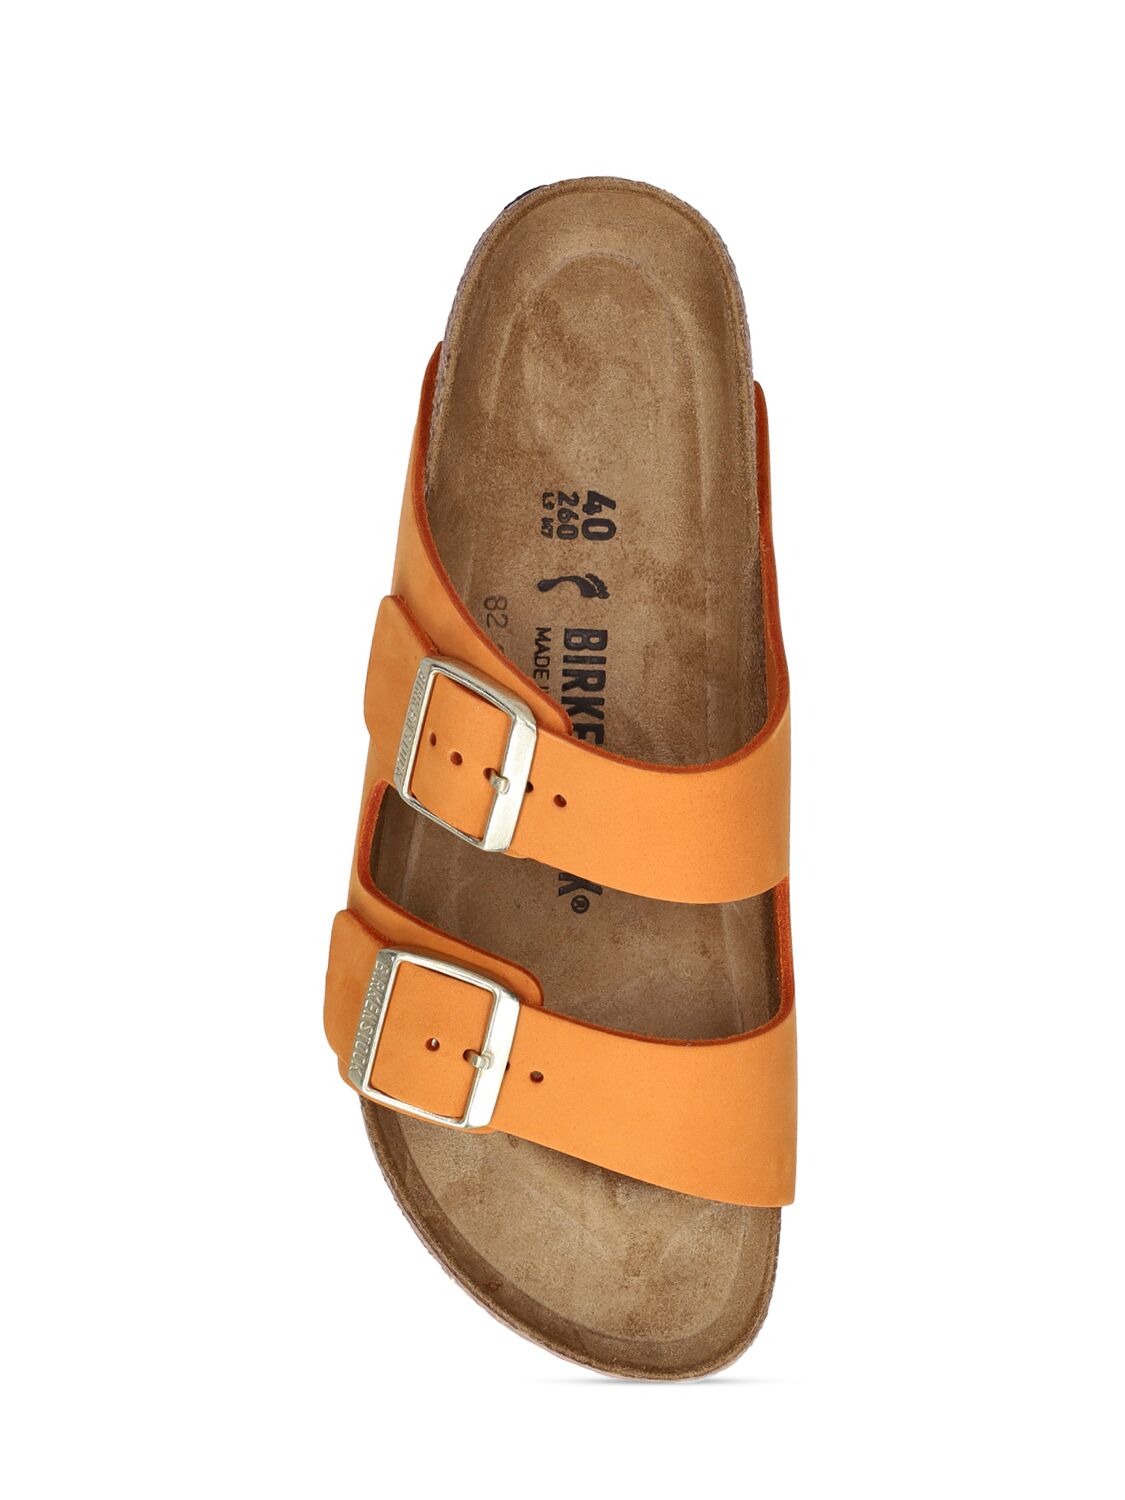 Shop Birkenstock Arizona Nubuck Sandals In Orange